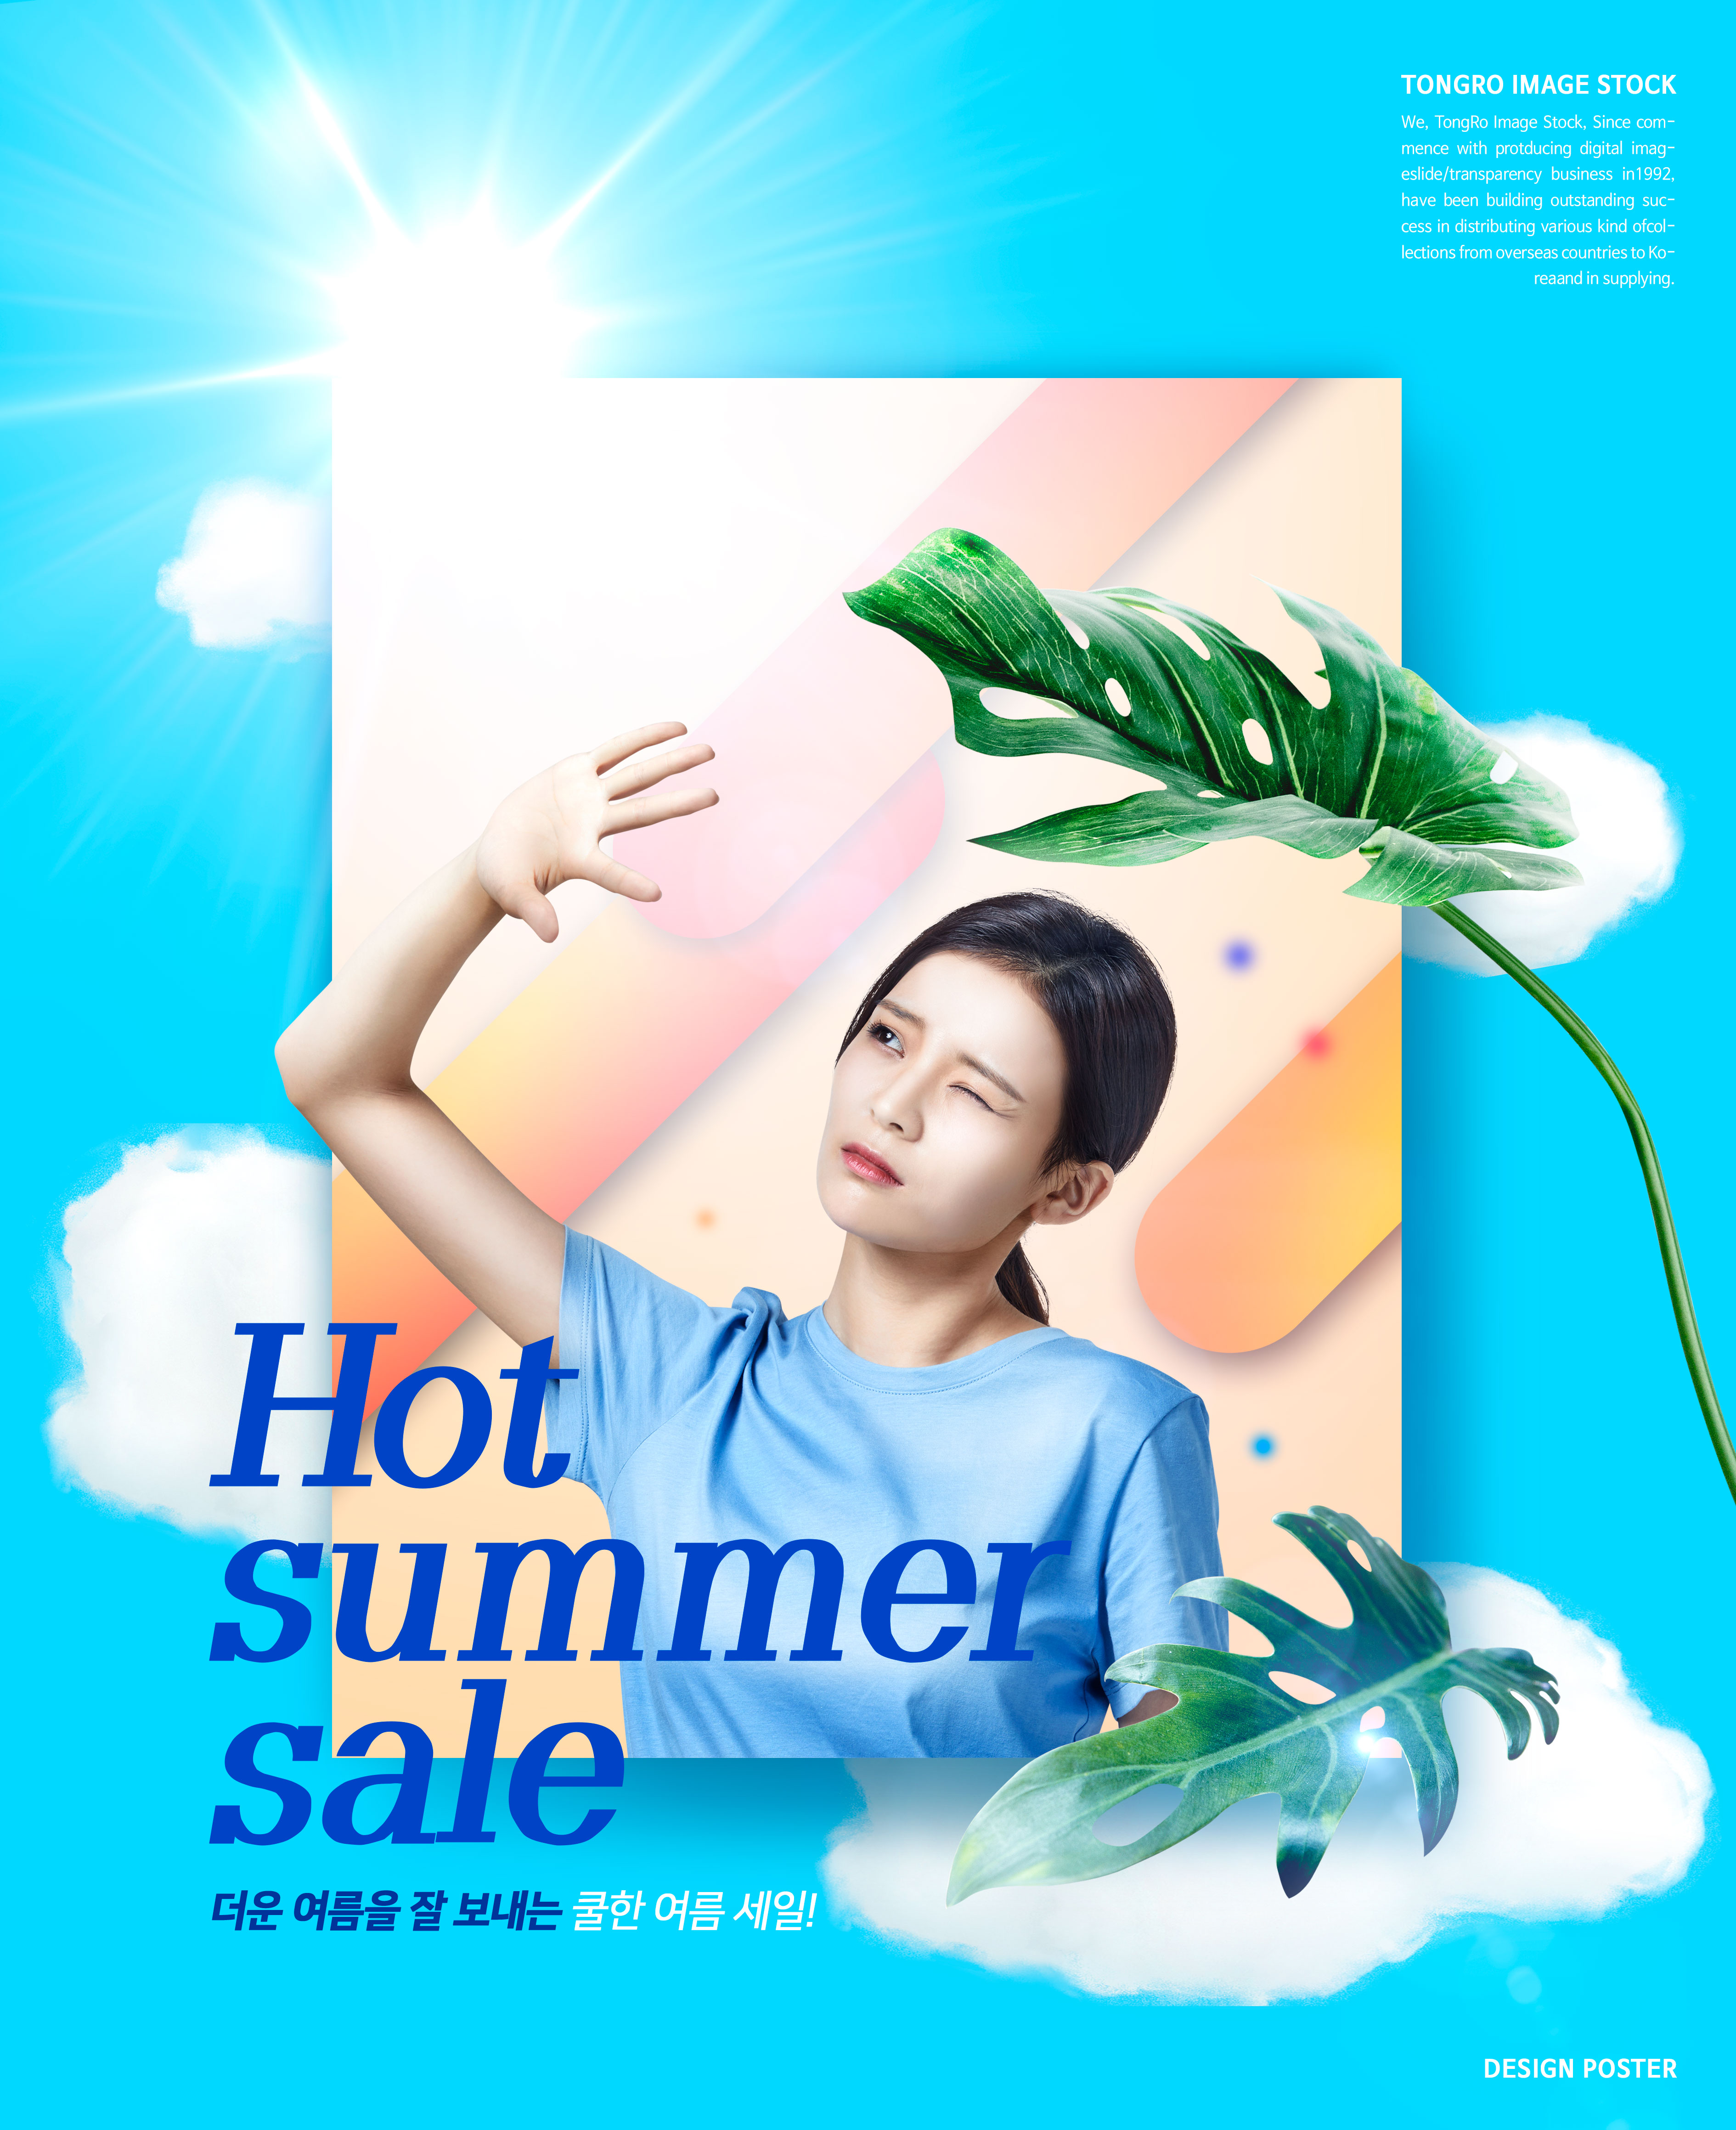 热情夏季主题销售广告海报设计模板插图